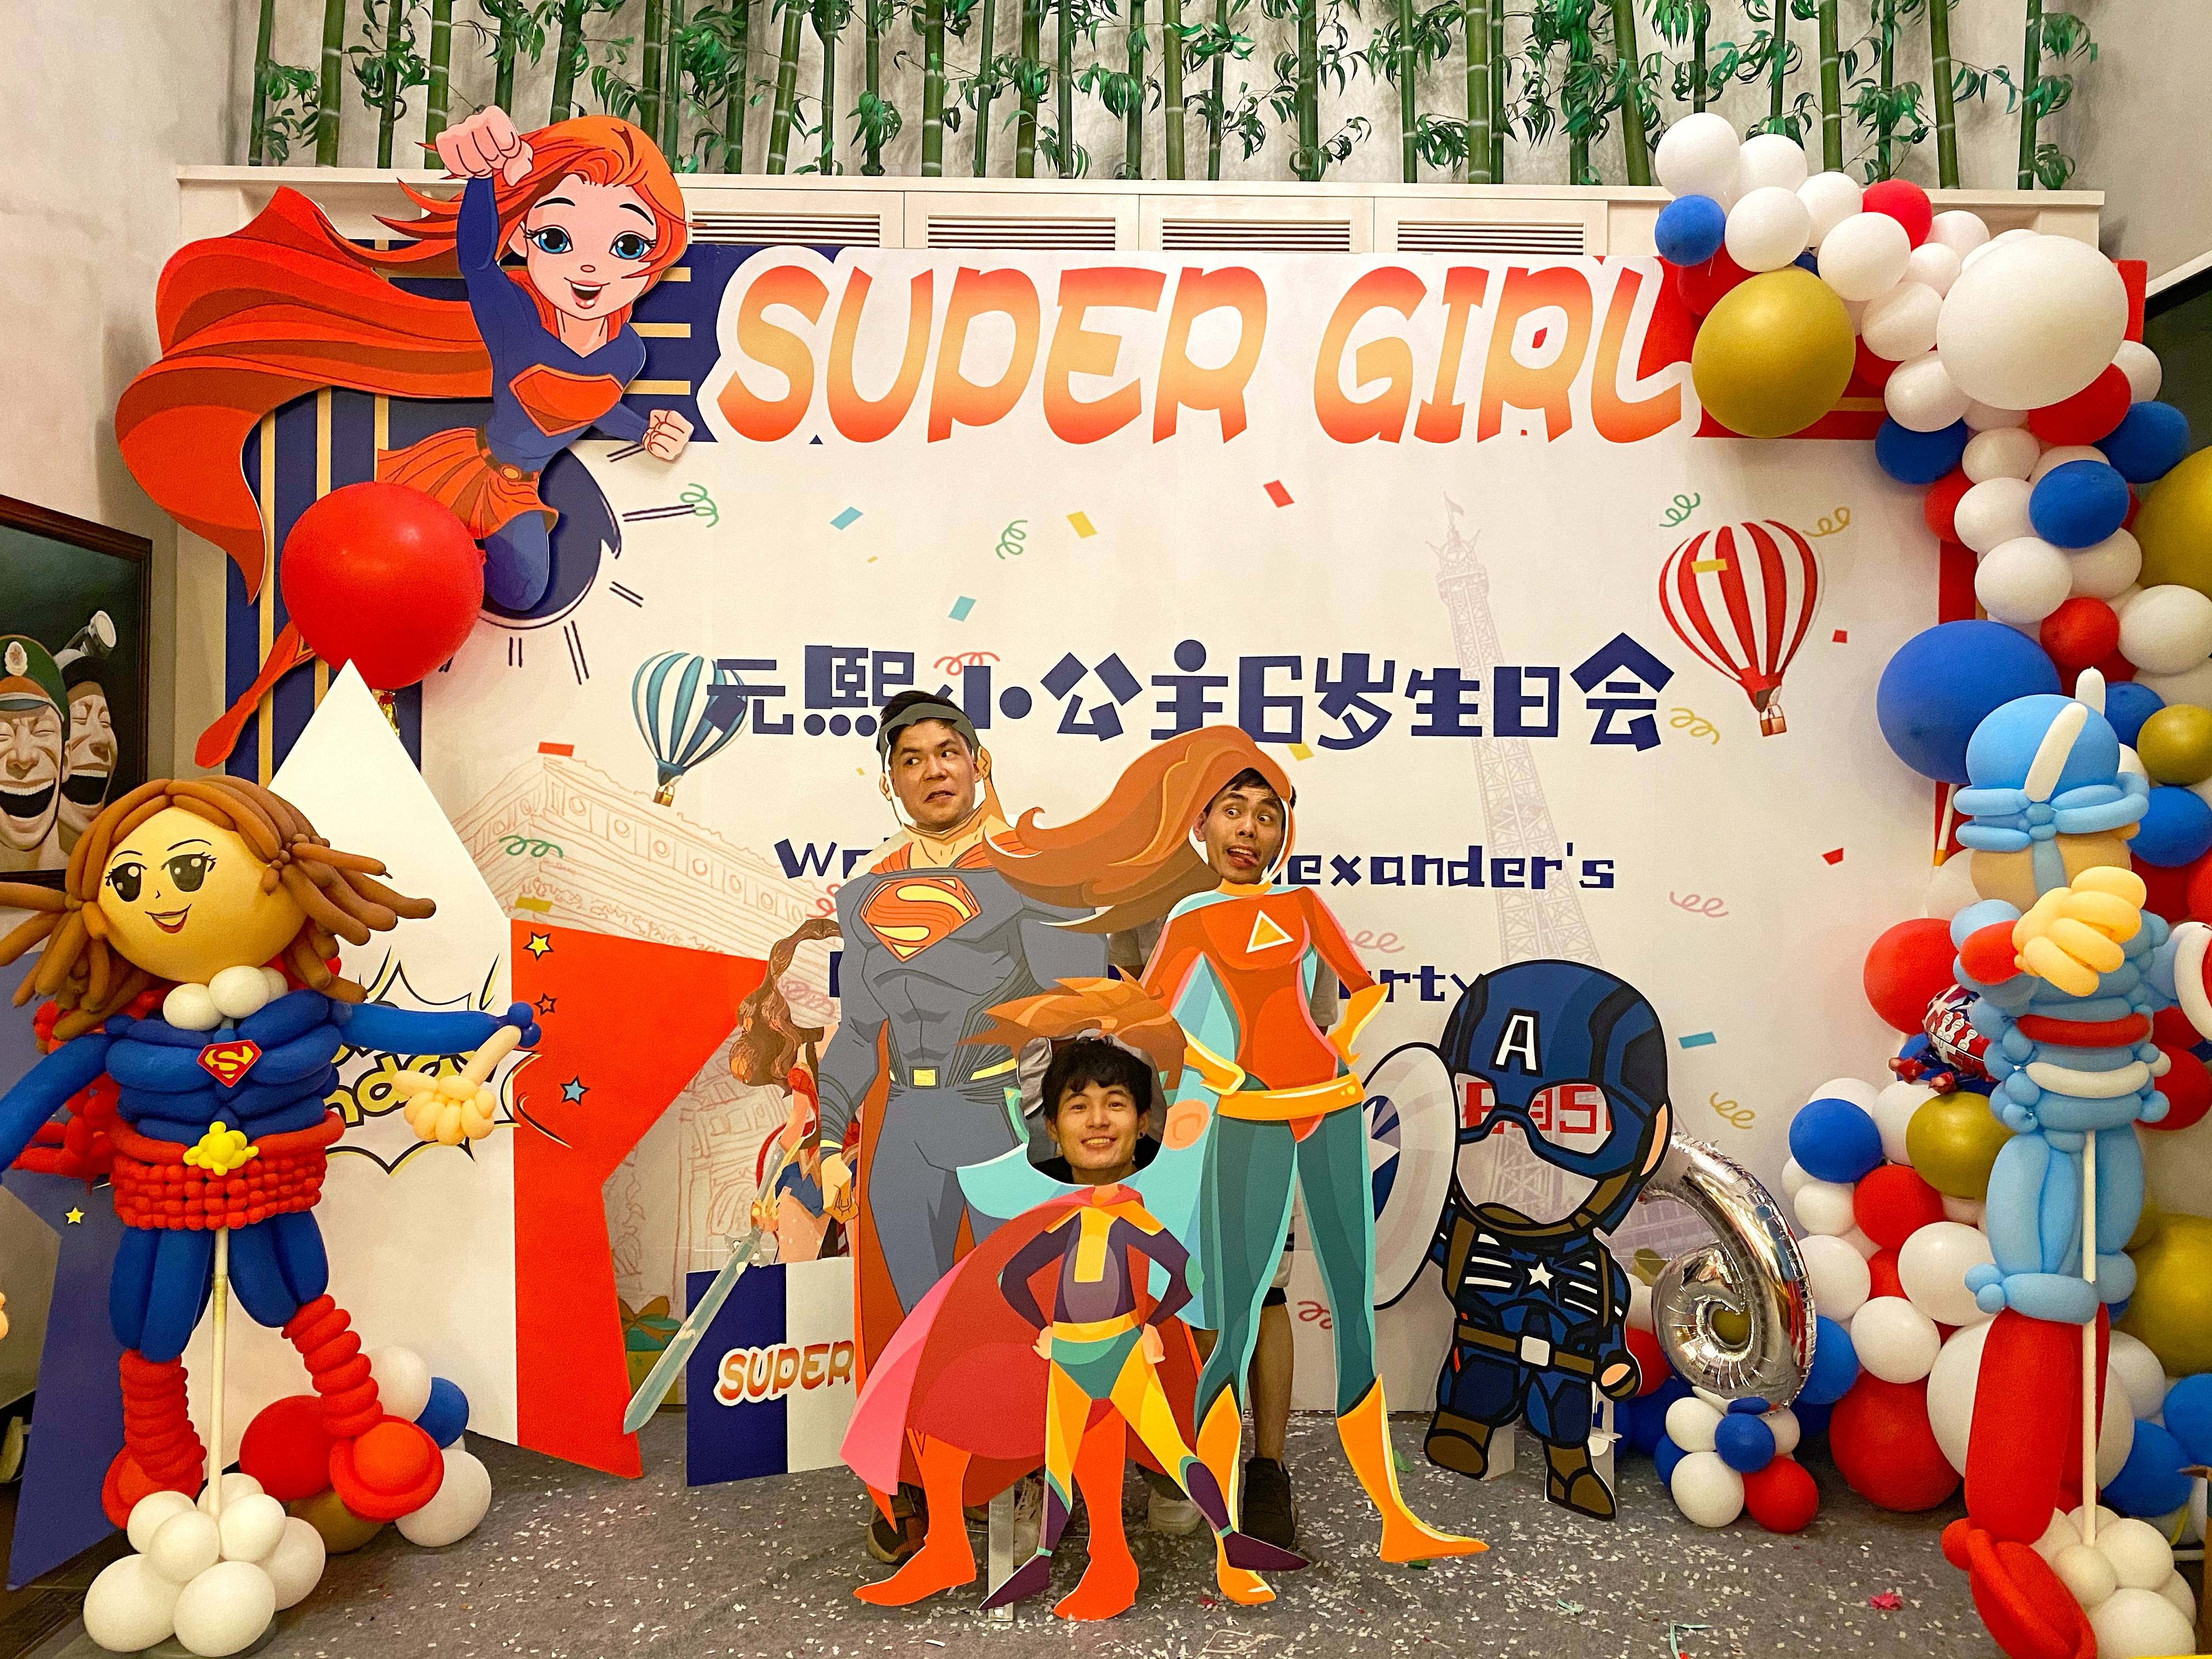 漫威主题派对|一场惊喜的生日策划,帮孩子实现超级女侠梦